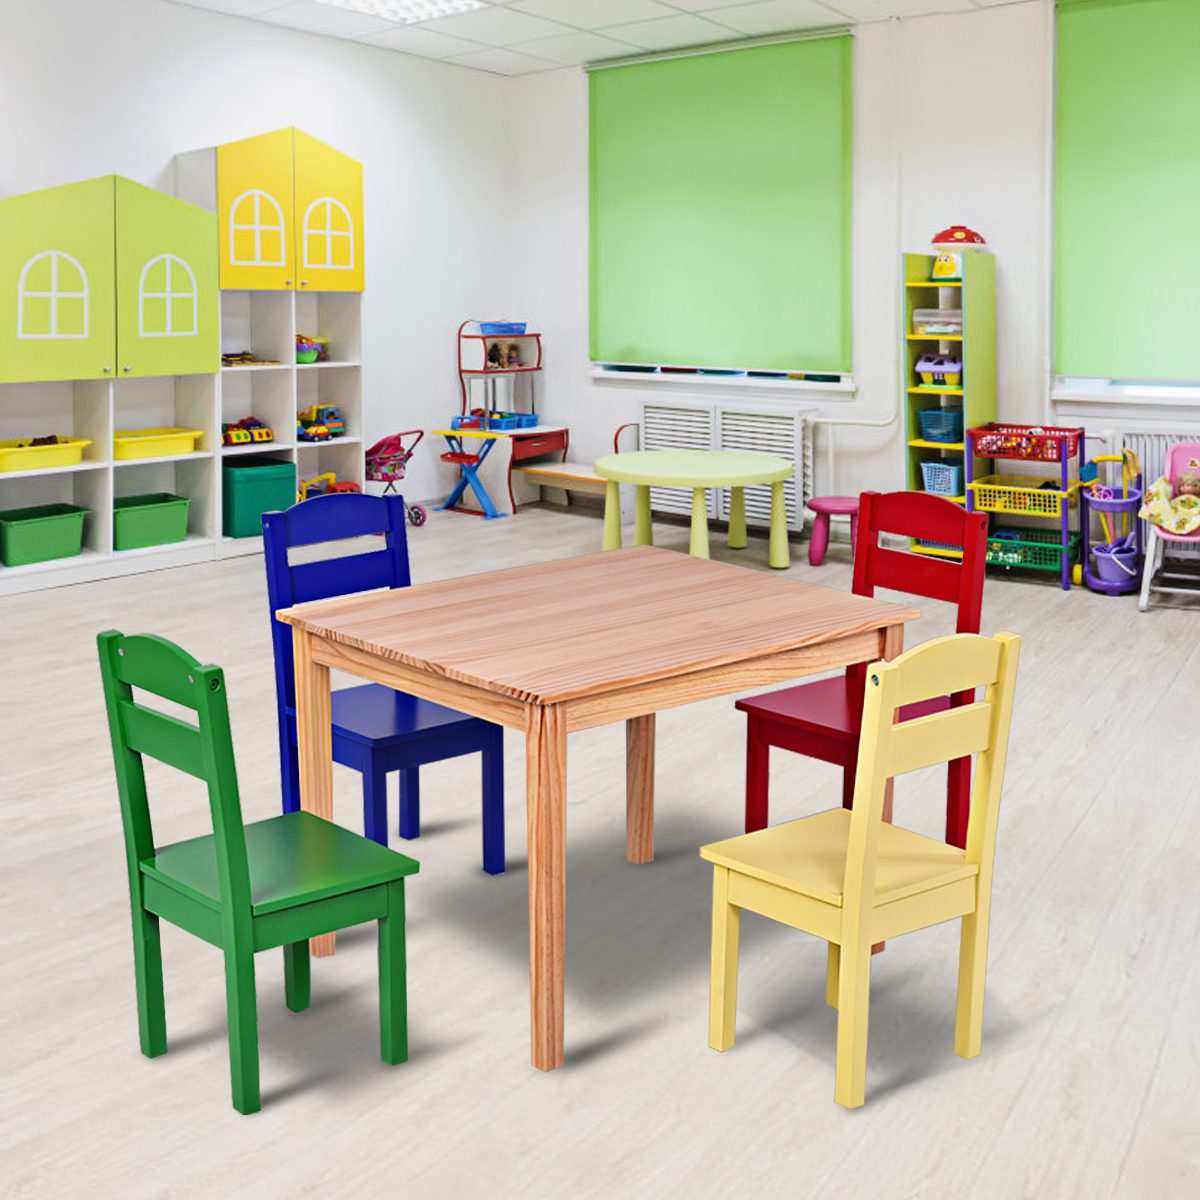 5-delige kinderzitgroep kindertafelgroep kindertafel met 4 stoelen grenen gekleurd en naturel